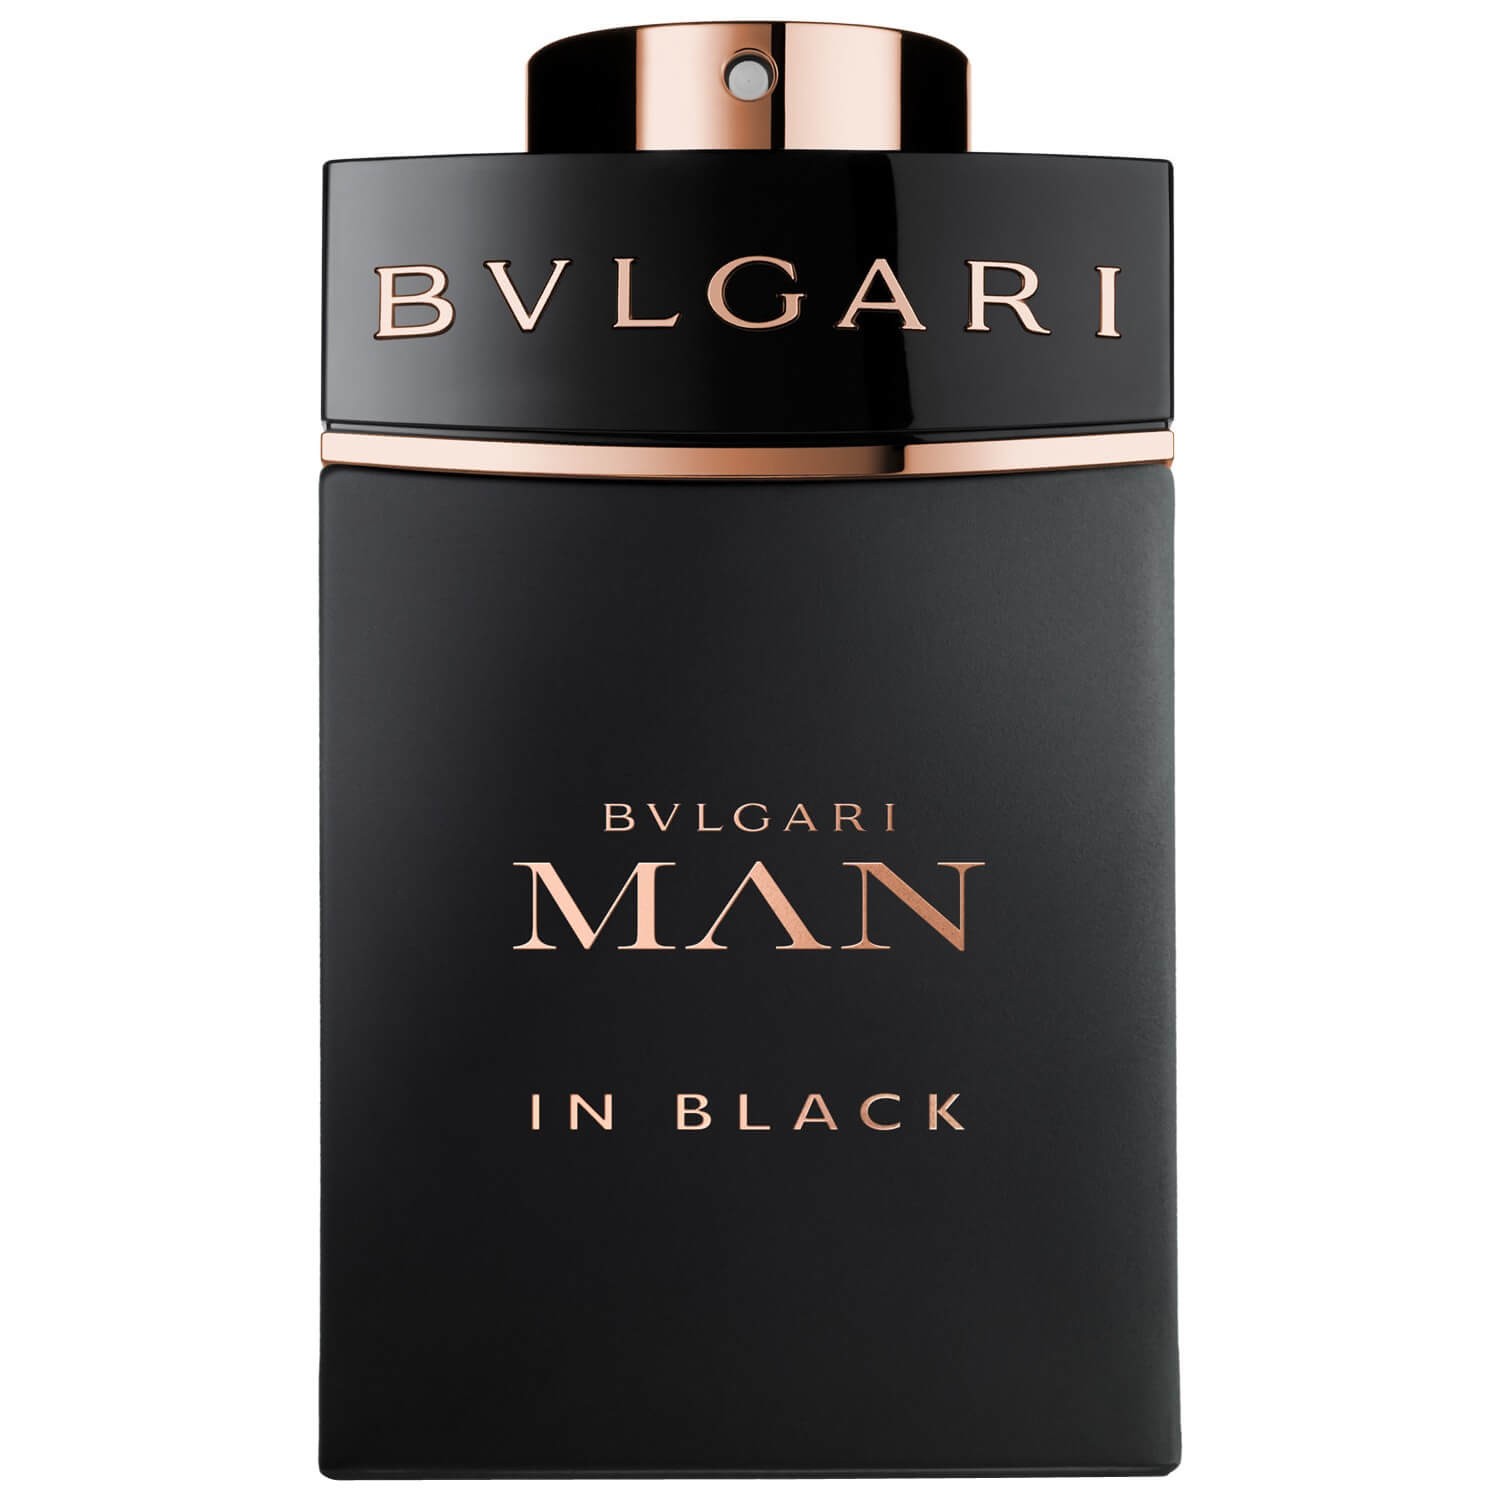 Bvlgari Man In Black main variant image